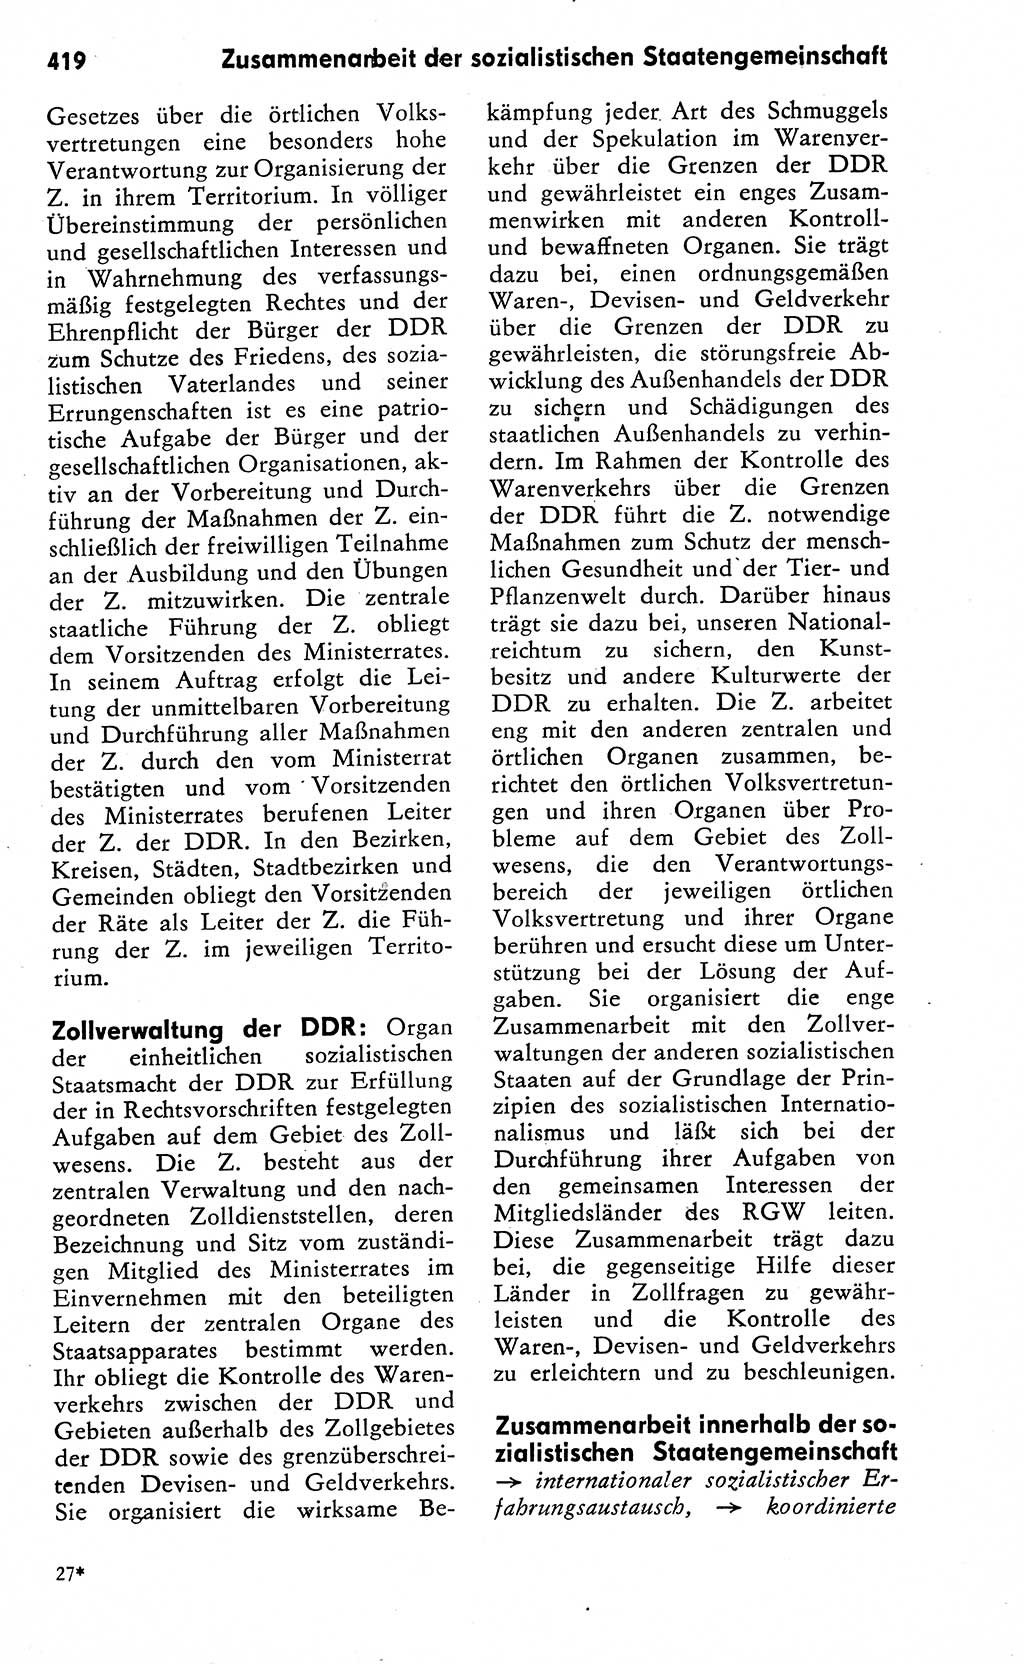 Wörterbuch zum sozialistischen Staat [Deutsche Demokratische Republik (DDR)] 1974, Seite 419 (Wb. soz. St. DDR 1974, S. 419)